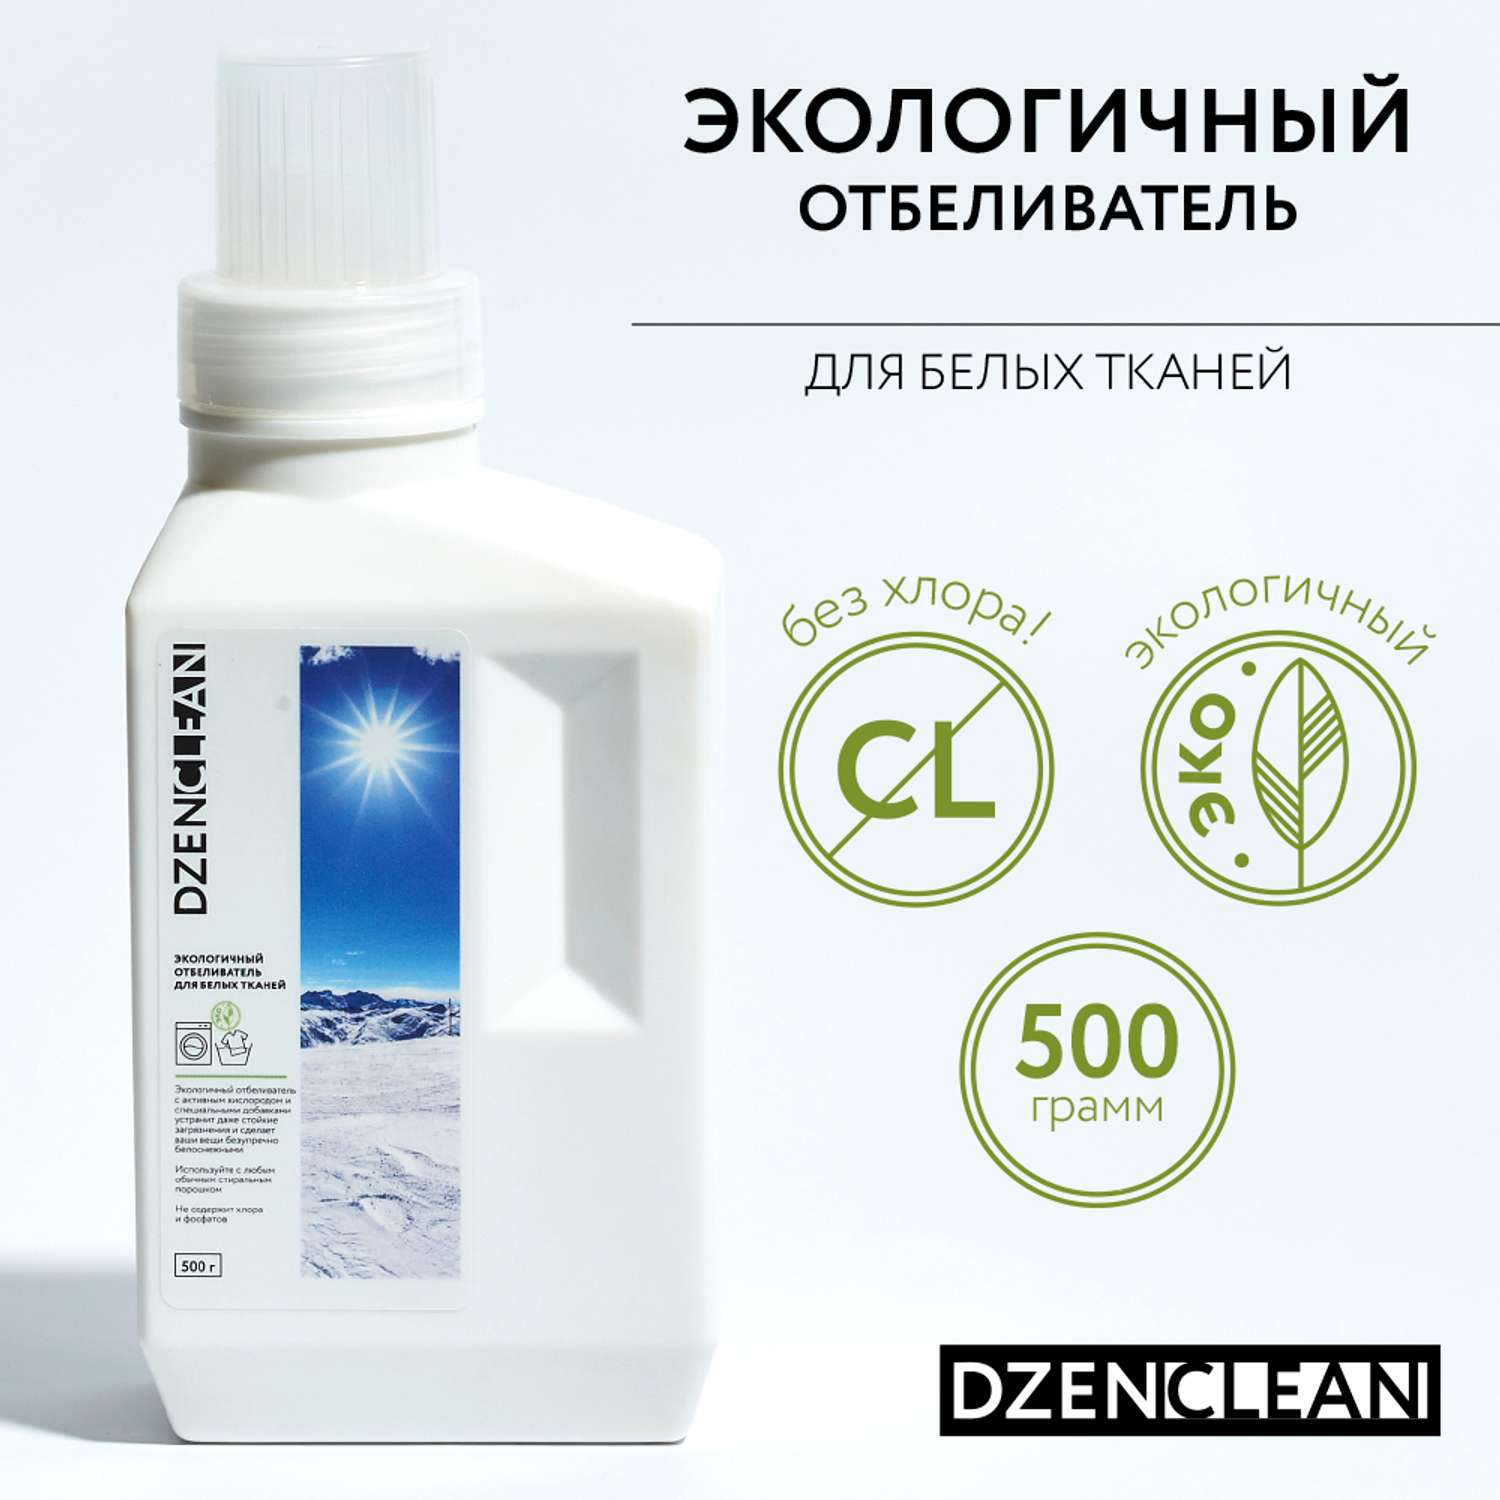 Отбеливатель DzenClean экологичный для белых тканей 500 г - фото 2